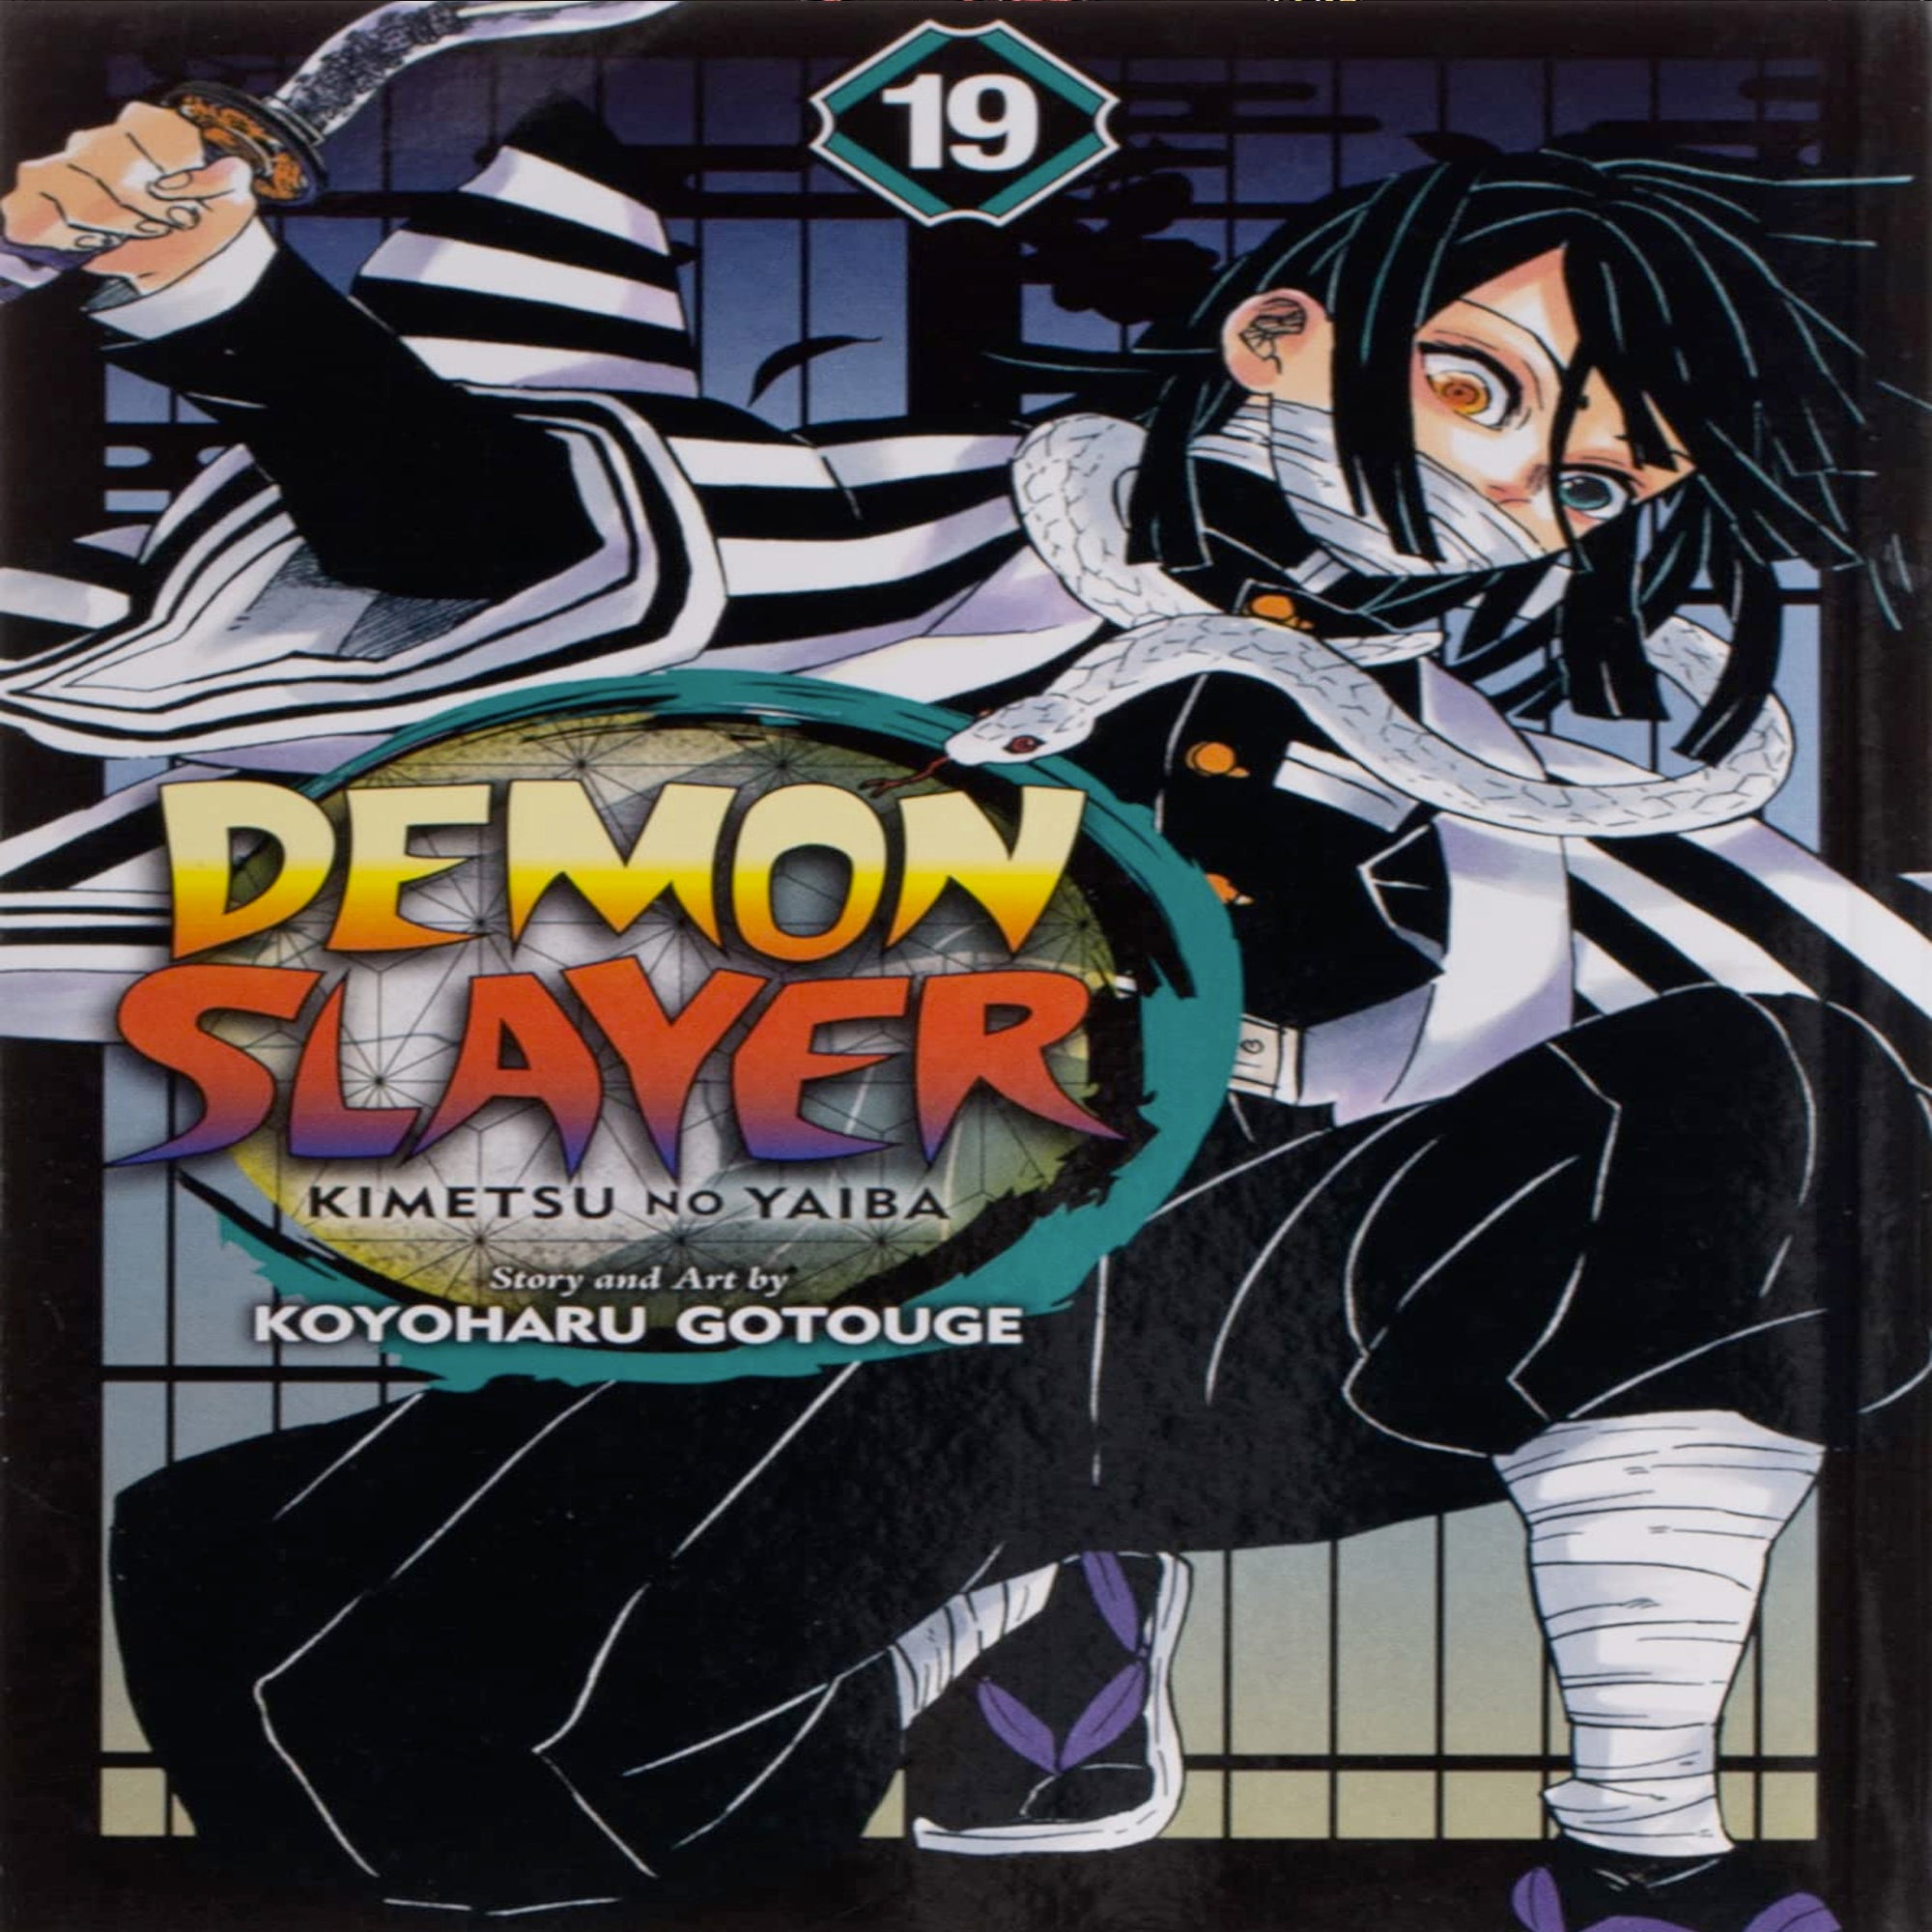 Demon Slayer Kimetsu no yaiba book vol 23 (finale) & gaiden 2 manga set